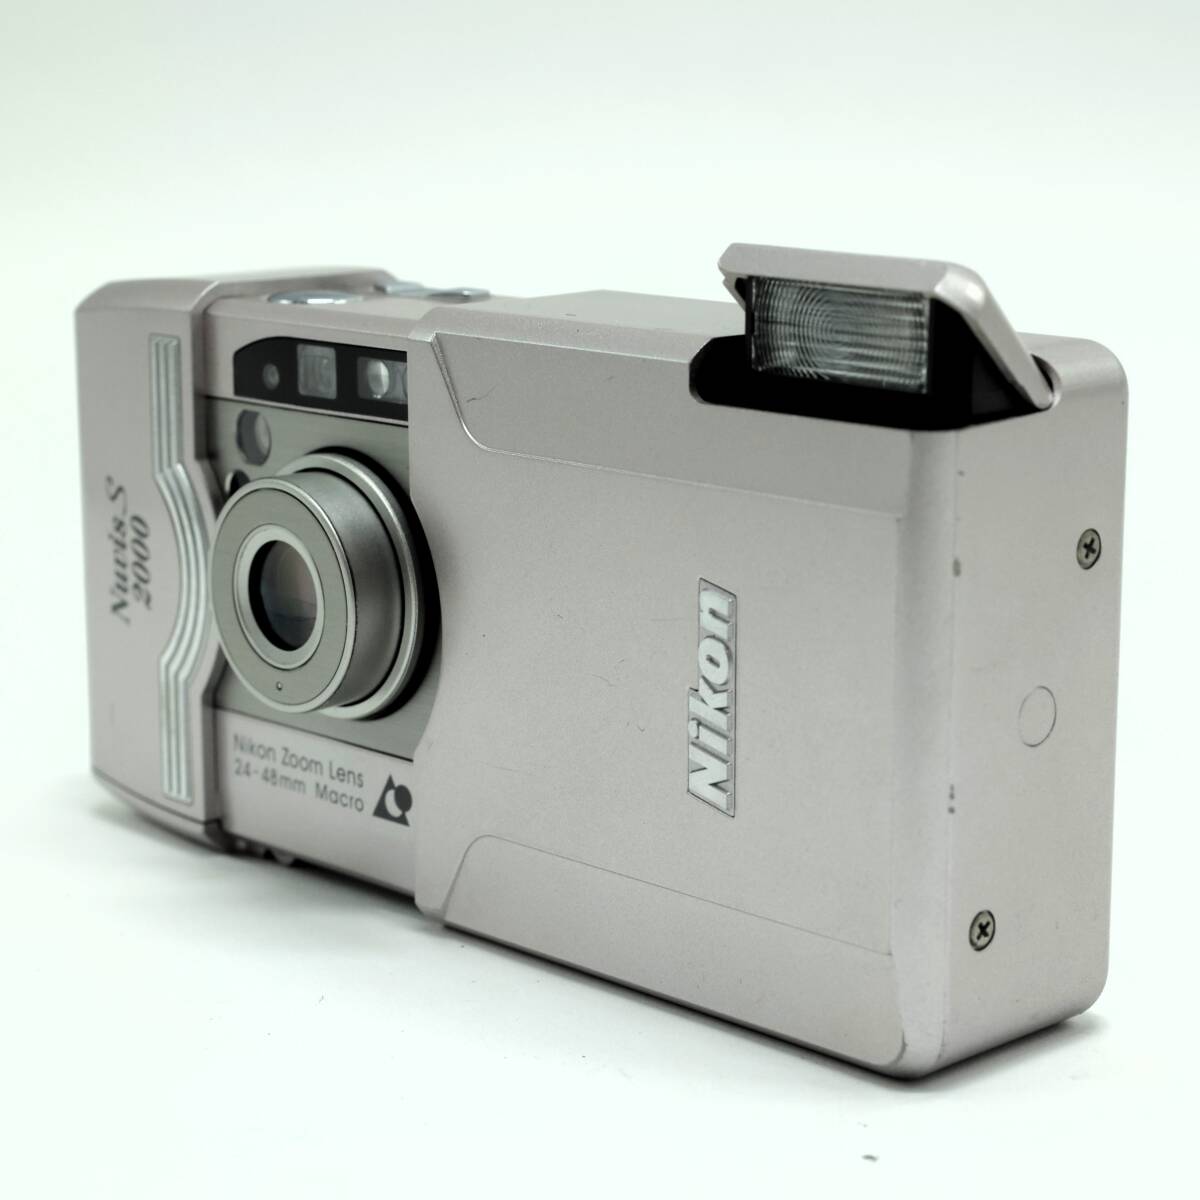 ニコン Nikon Nuvis S2000　　　　　　　　　　　　　　　　　　　　　　　　　　　　　　　　　　　　　　　　　　　　　　　　　HO403014